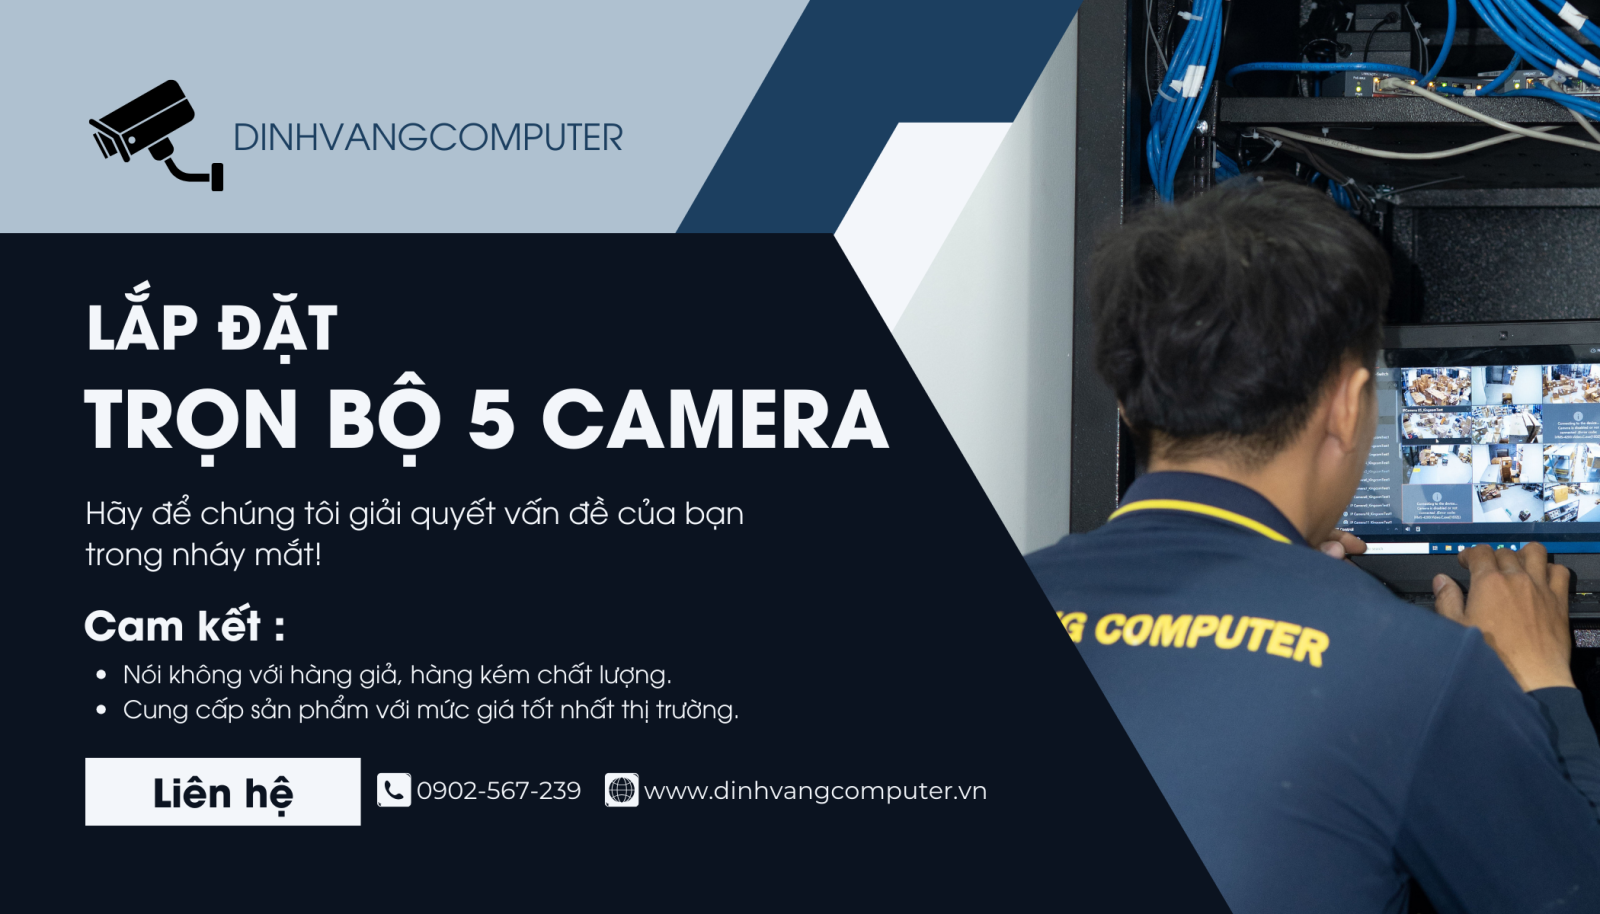 Đỉnh Vàng Computer cung cấp dịch vụ lắp đặt trọn bộ 5 camera tại nhà với mức giá cạnh tranh, phù hợp với mọi người dùng.